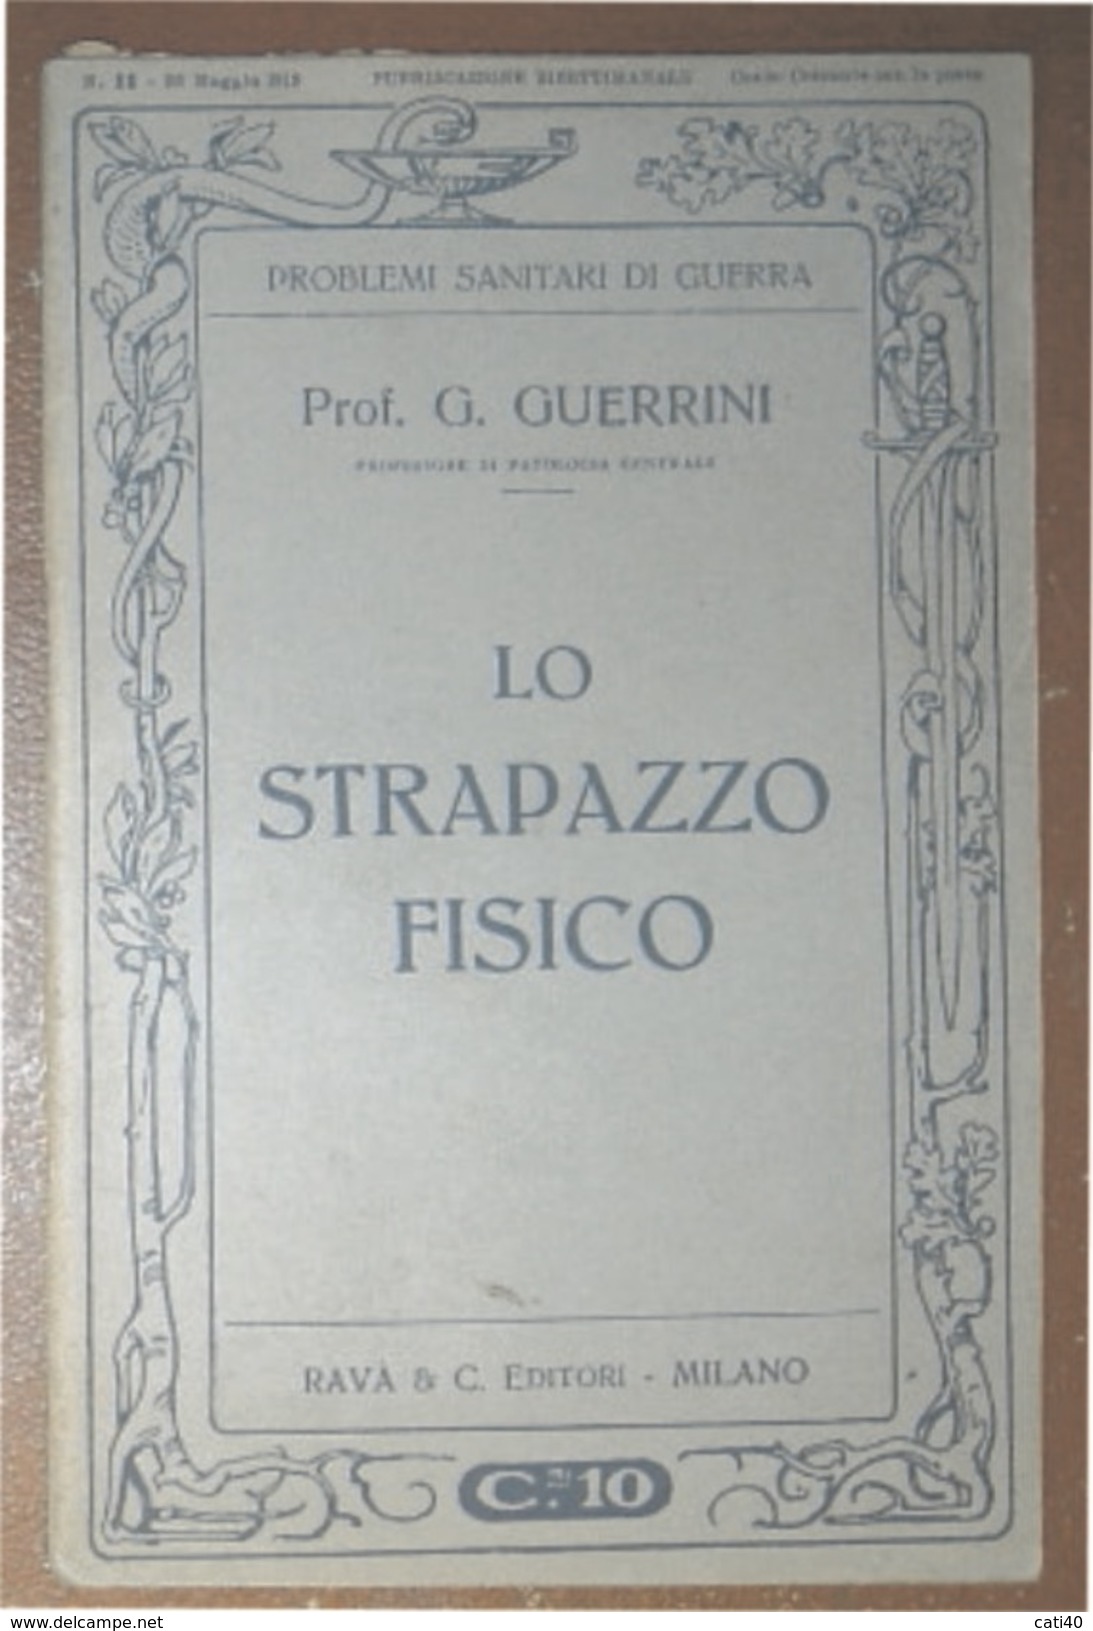 PROBLEMI SANITARI DI GUERRA LO STRAPAZZO FISICO  RAVA'  EDITORE 1915 DEL PROF. G. GUERRINI - Guerra 1914-18